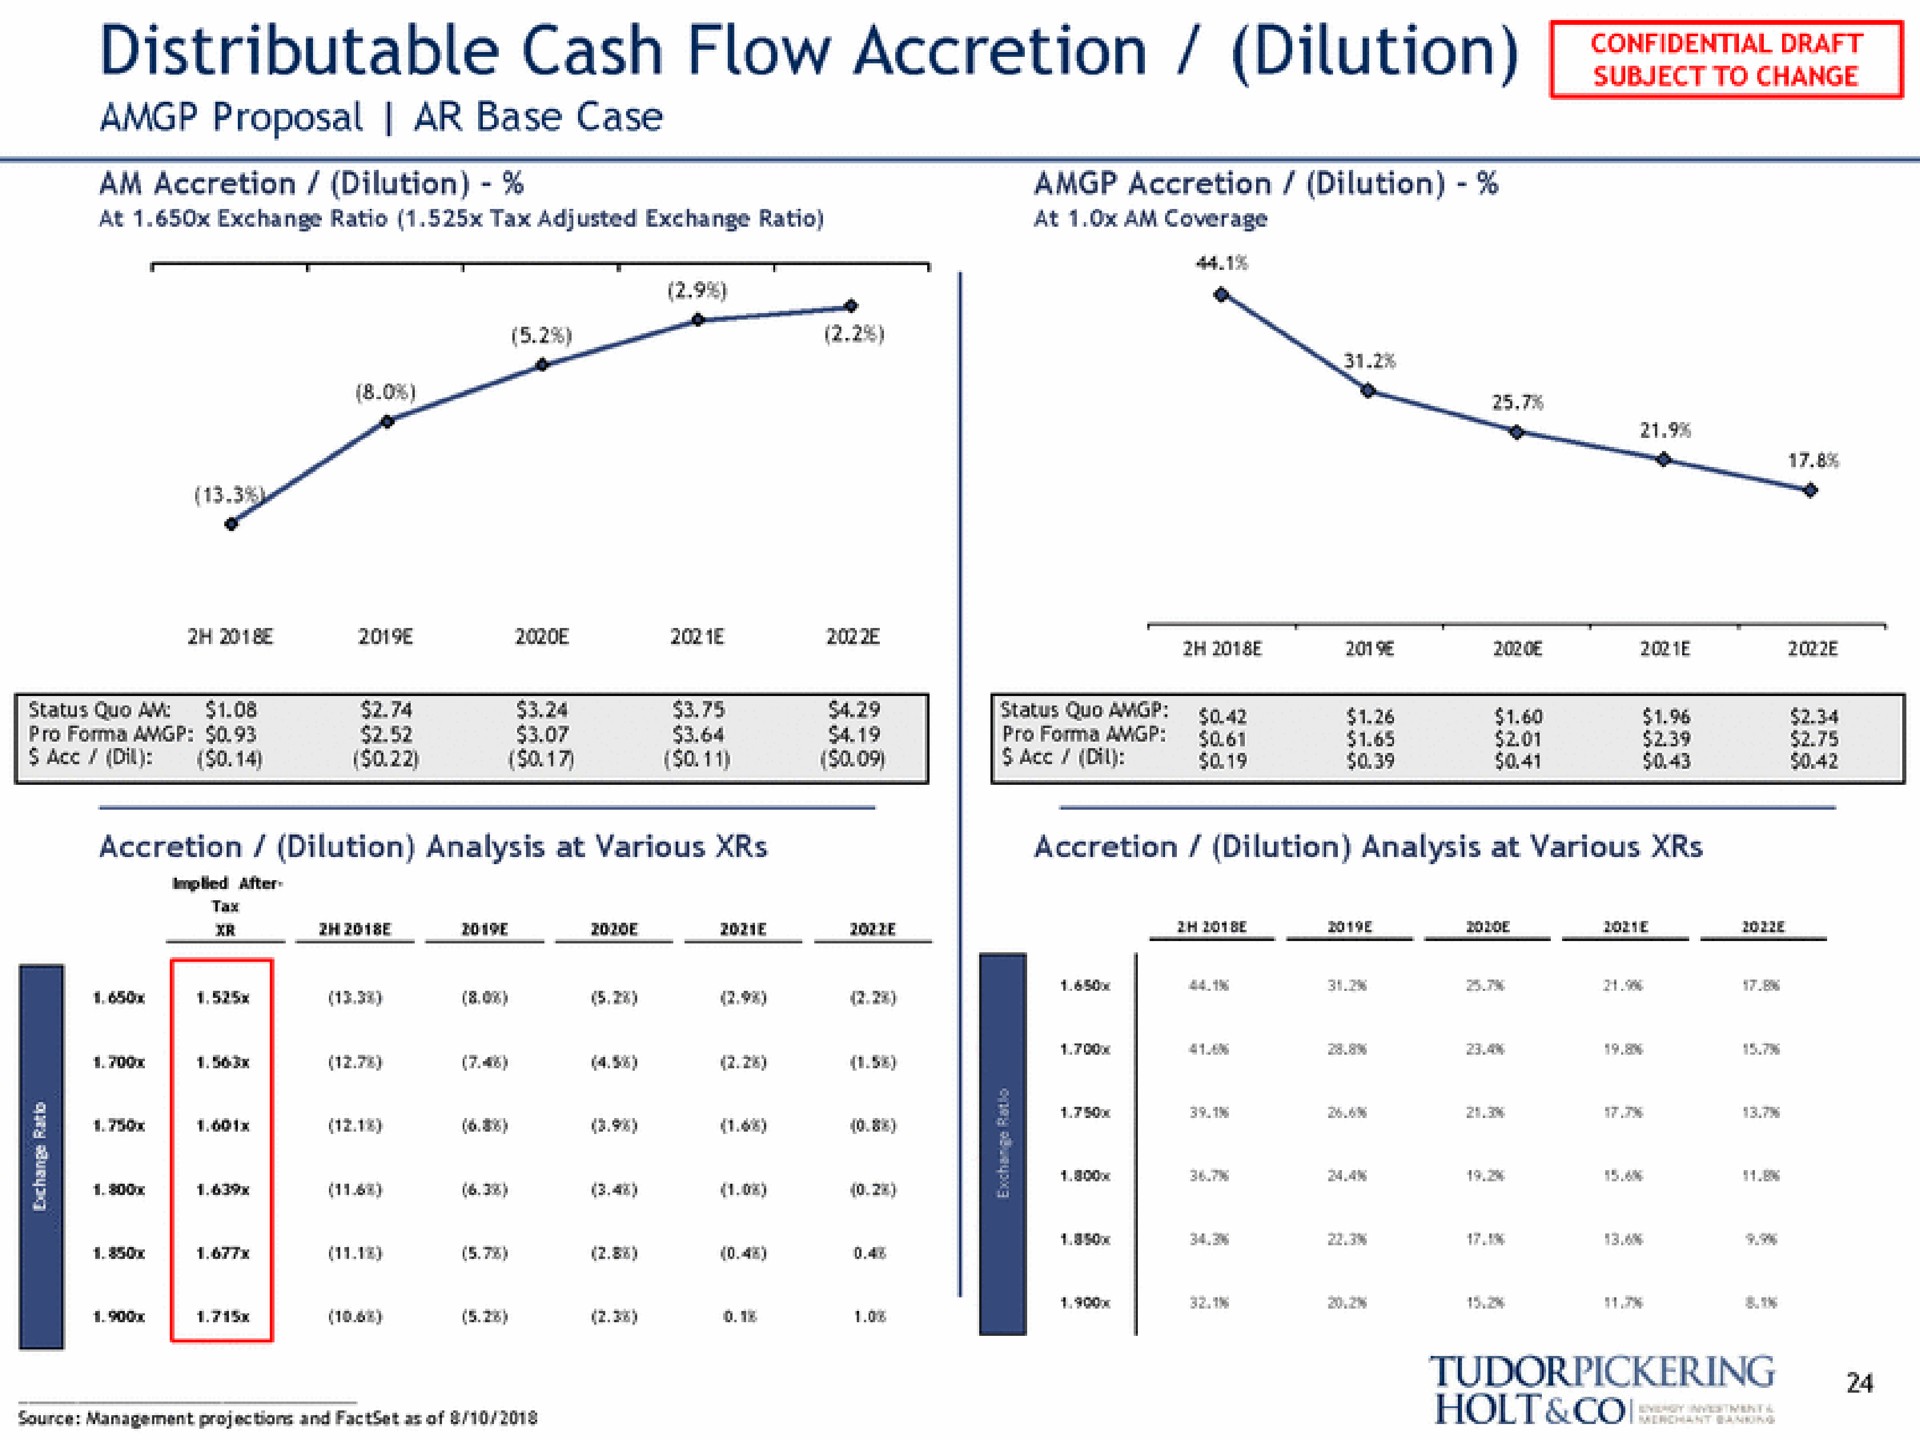 distributable cash flow accretion dilution proposal base case | Tudor, Pickering, Holt & Co